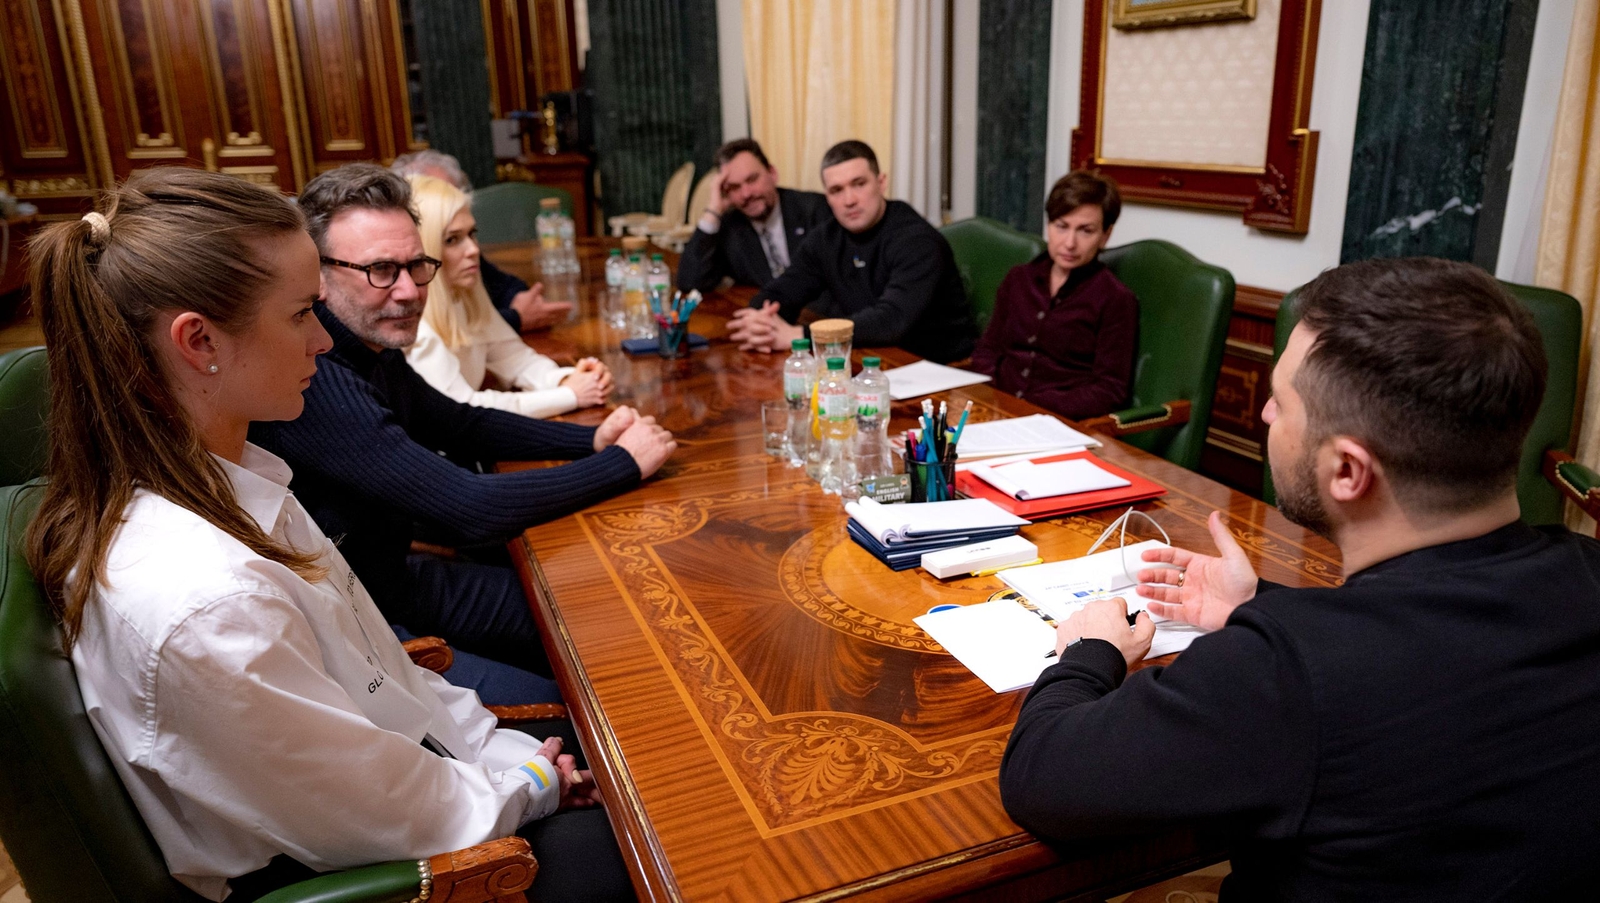 President Zelenskyy has Discussed the Rebuild Ukraine Program With UNITED24 Fundraising Platform Ambassadors, Elina Svitolina and Michel Hazanavicius